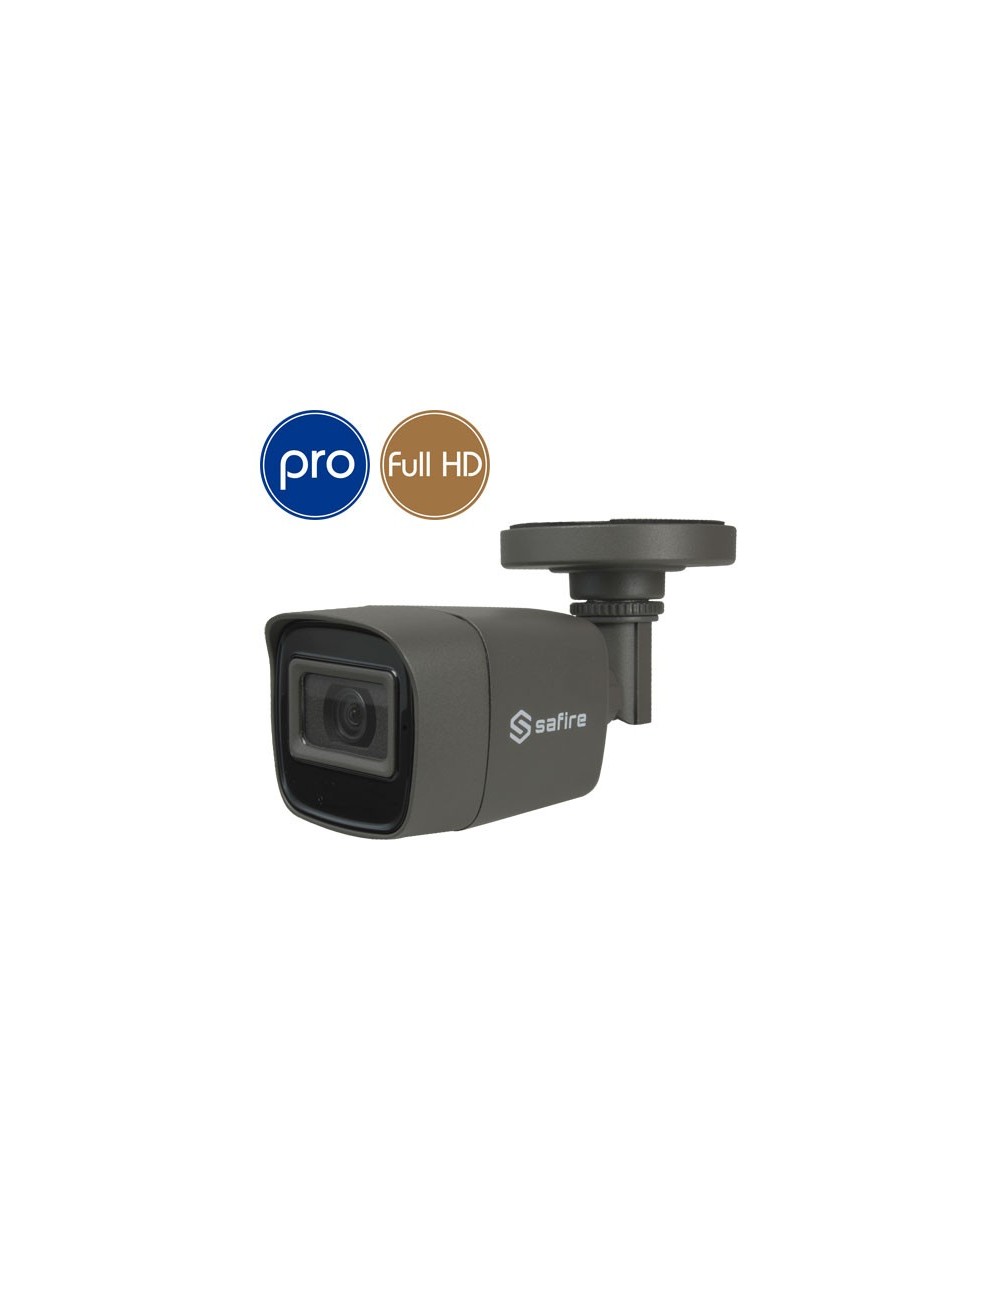 HD camera SAFIRE - Full HD - 2 Megapixel - IR 30m